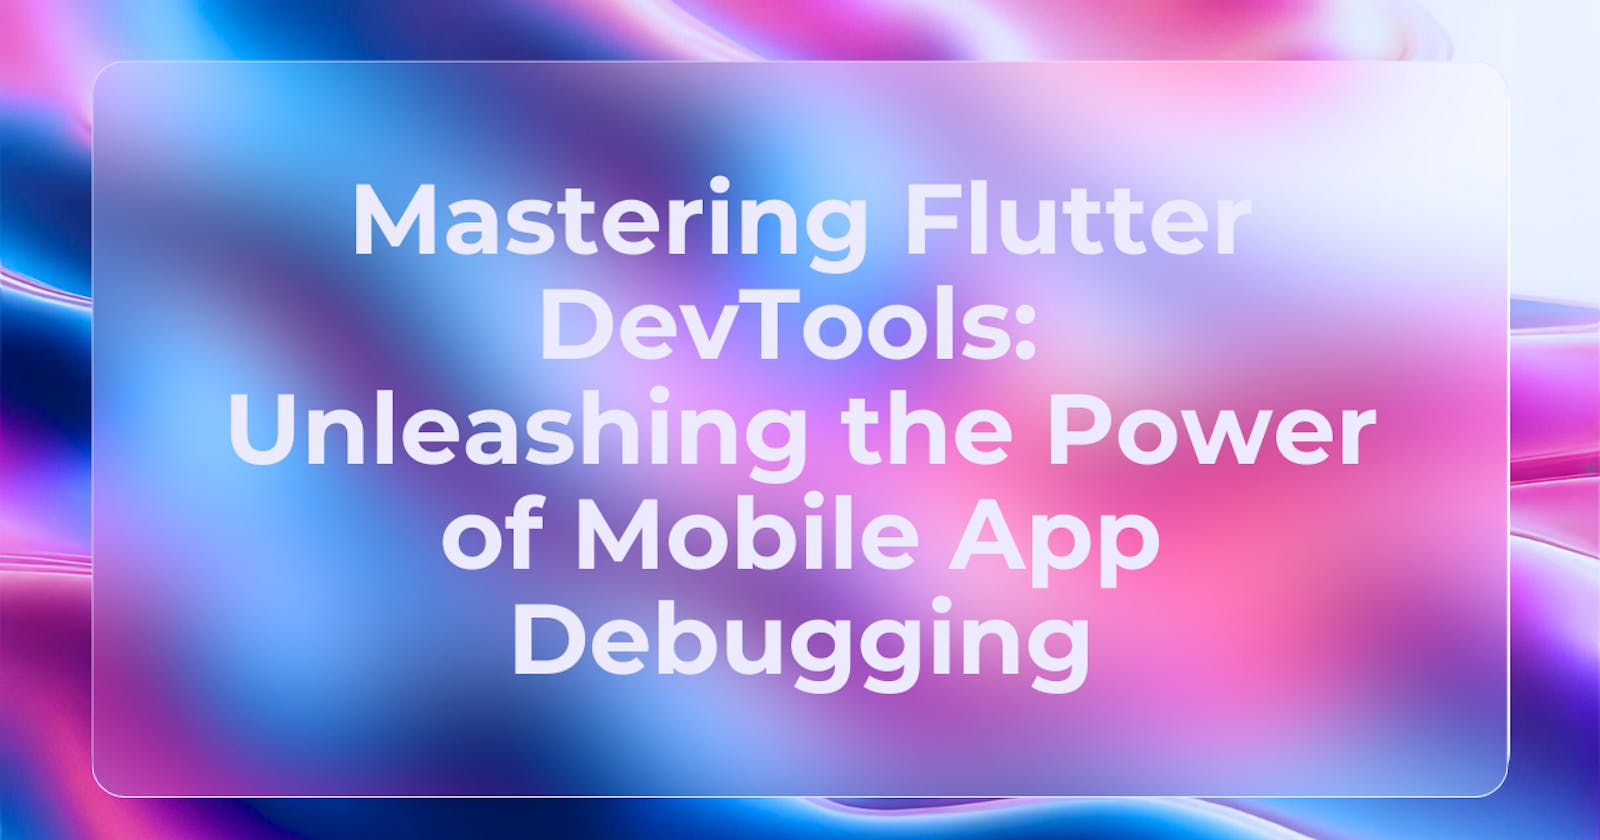 Mastering Flutter DevTools: Unleashing the Power of Mobile App Debugging